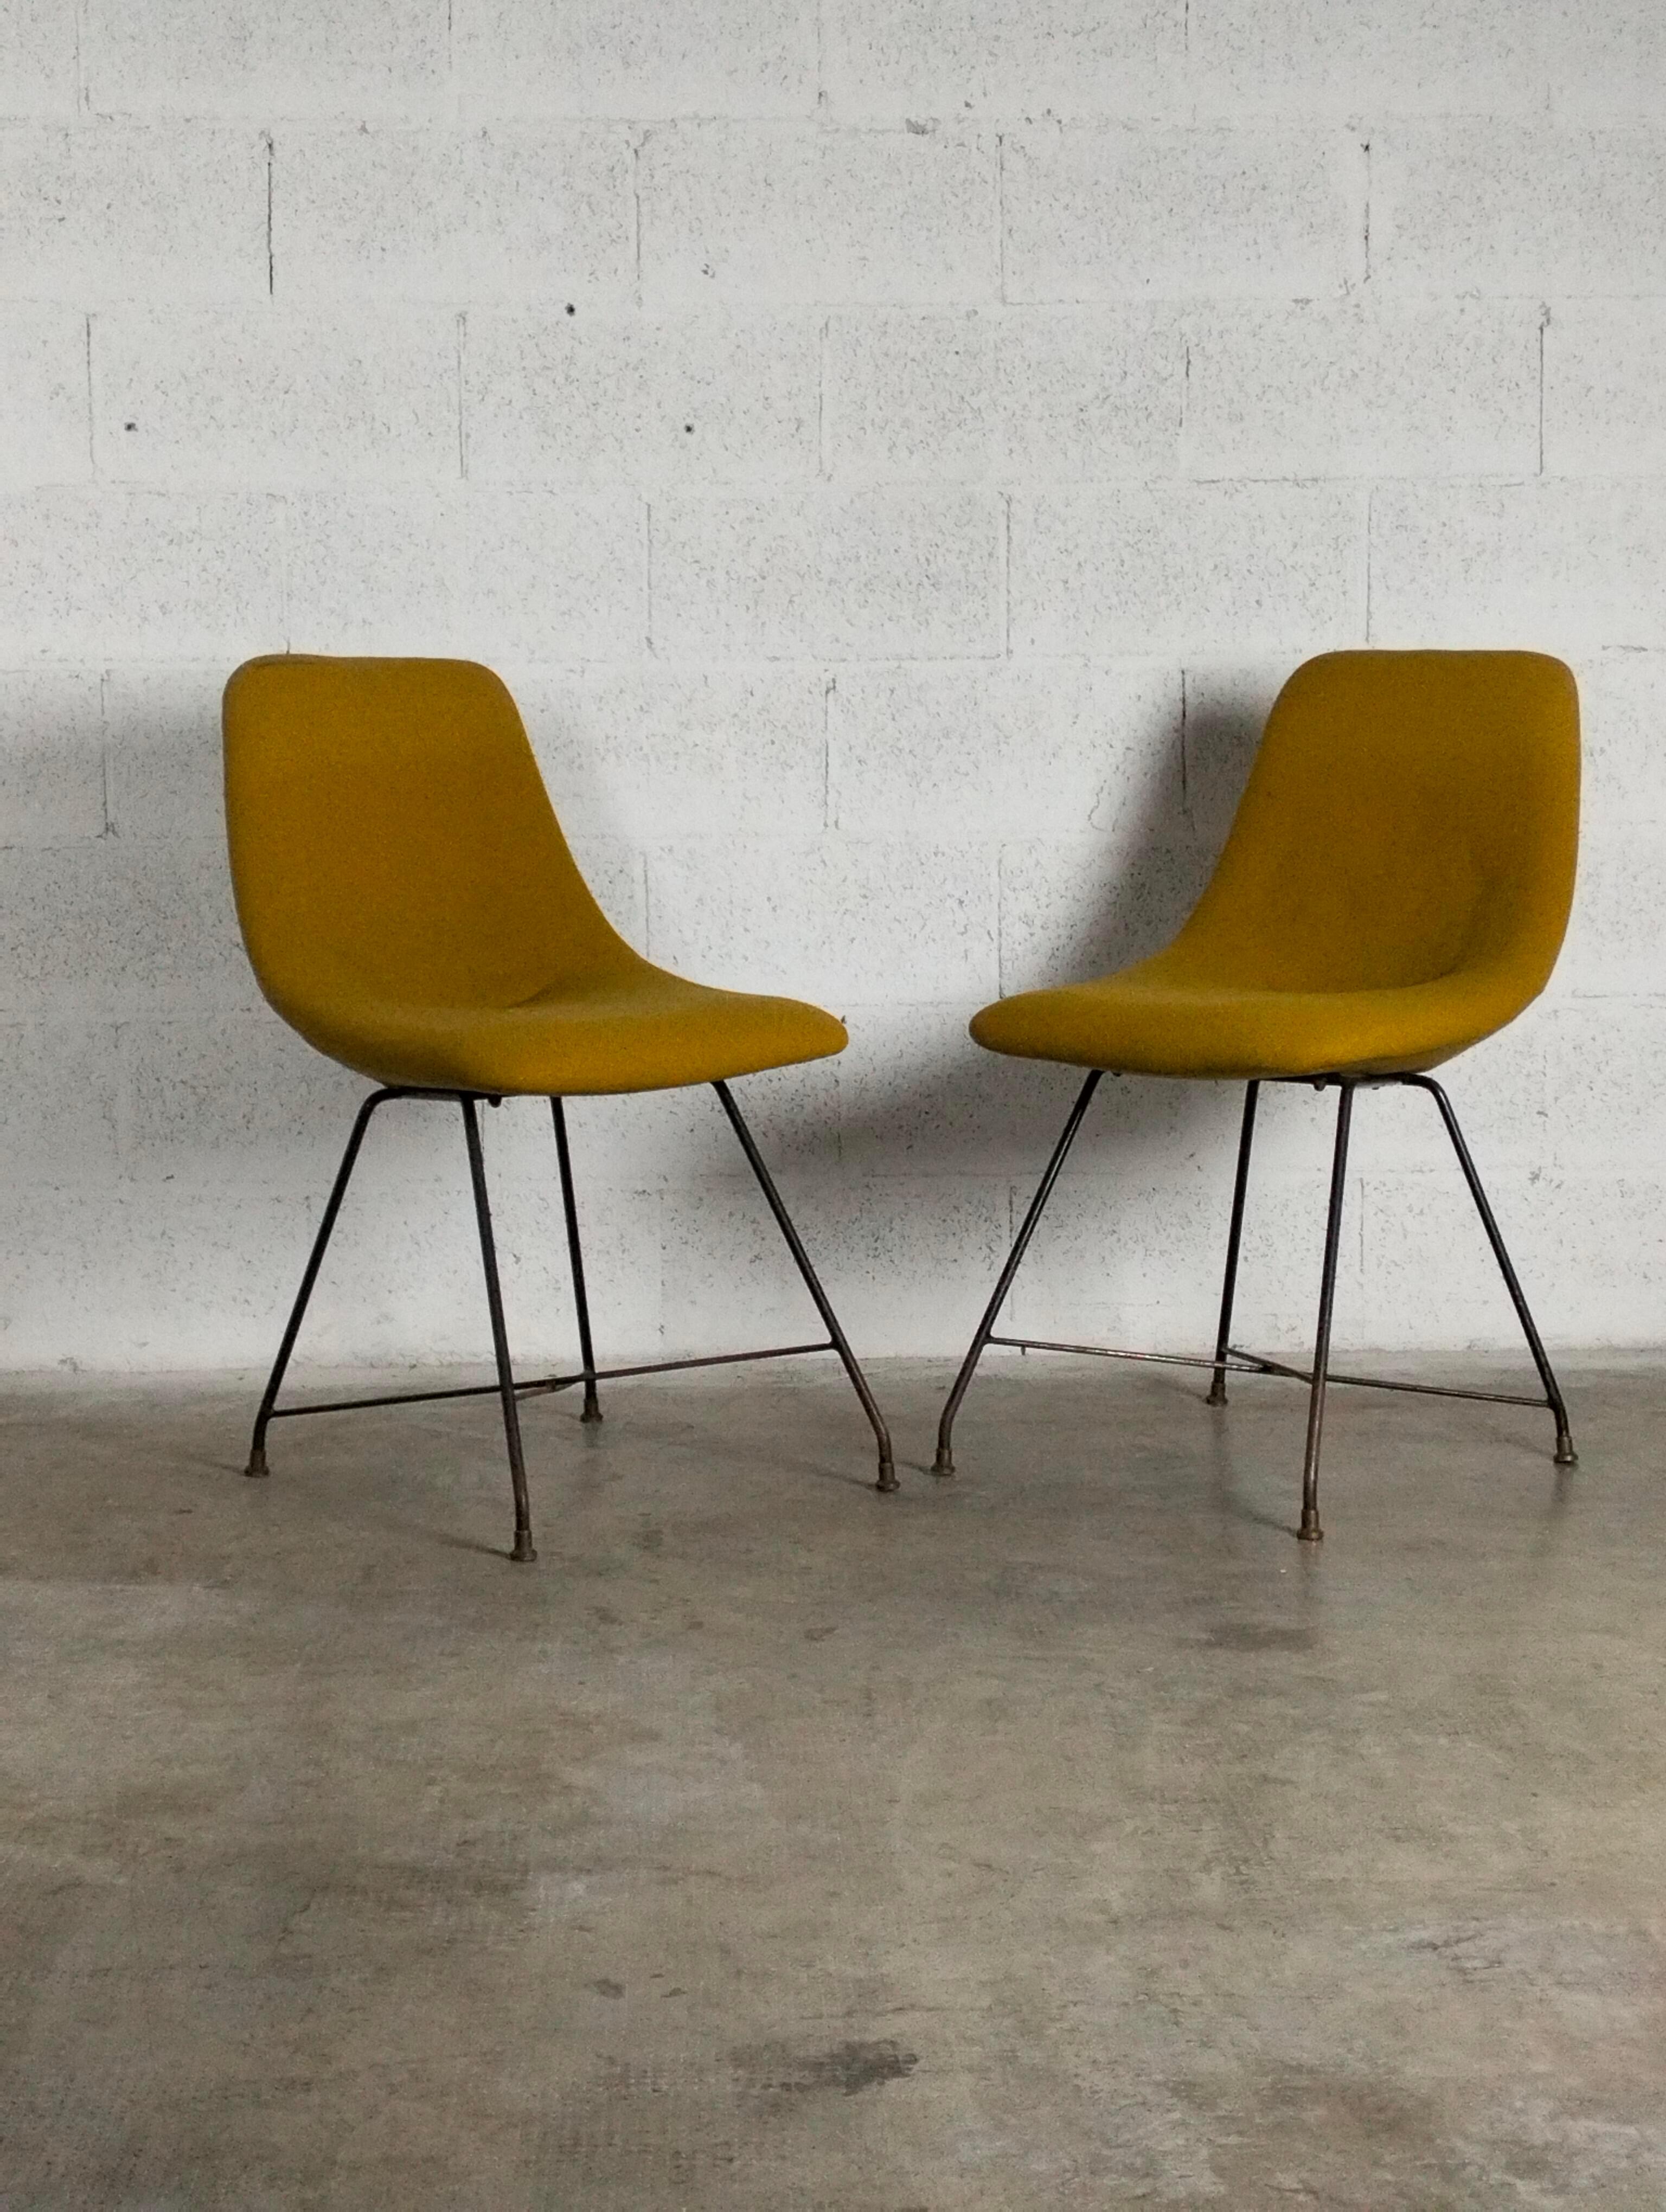 Satz von 2 Aster-Stühlen von Augusto Bozzi für Saporiti - '50'60

Augusto Bozzi
(1924 - 1982)
Der Name des Designers Augusto Bozzi ist mit dem von Sergio Saporiti, dem Gründer des gleichnamigen Unternehmens im Jahr 1945, verbunden. Dank ihrer